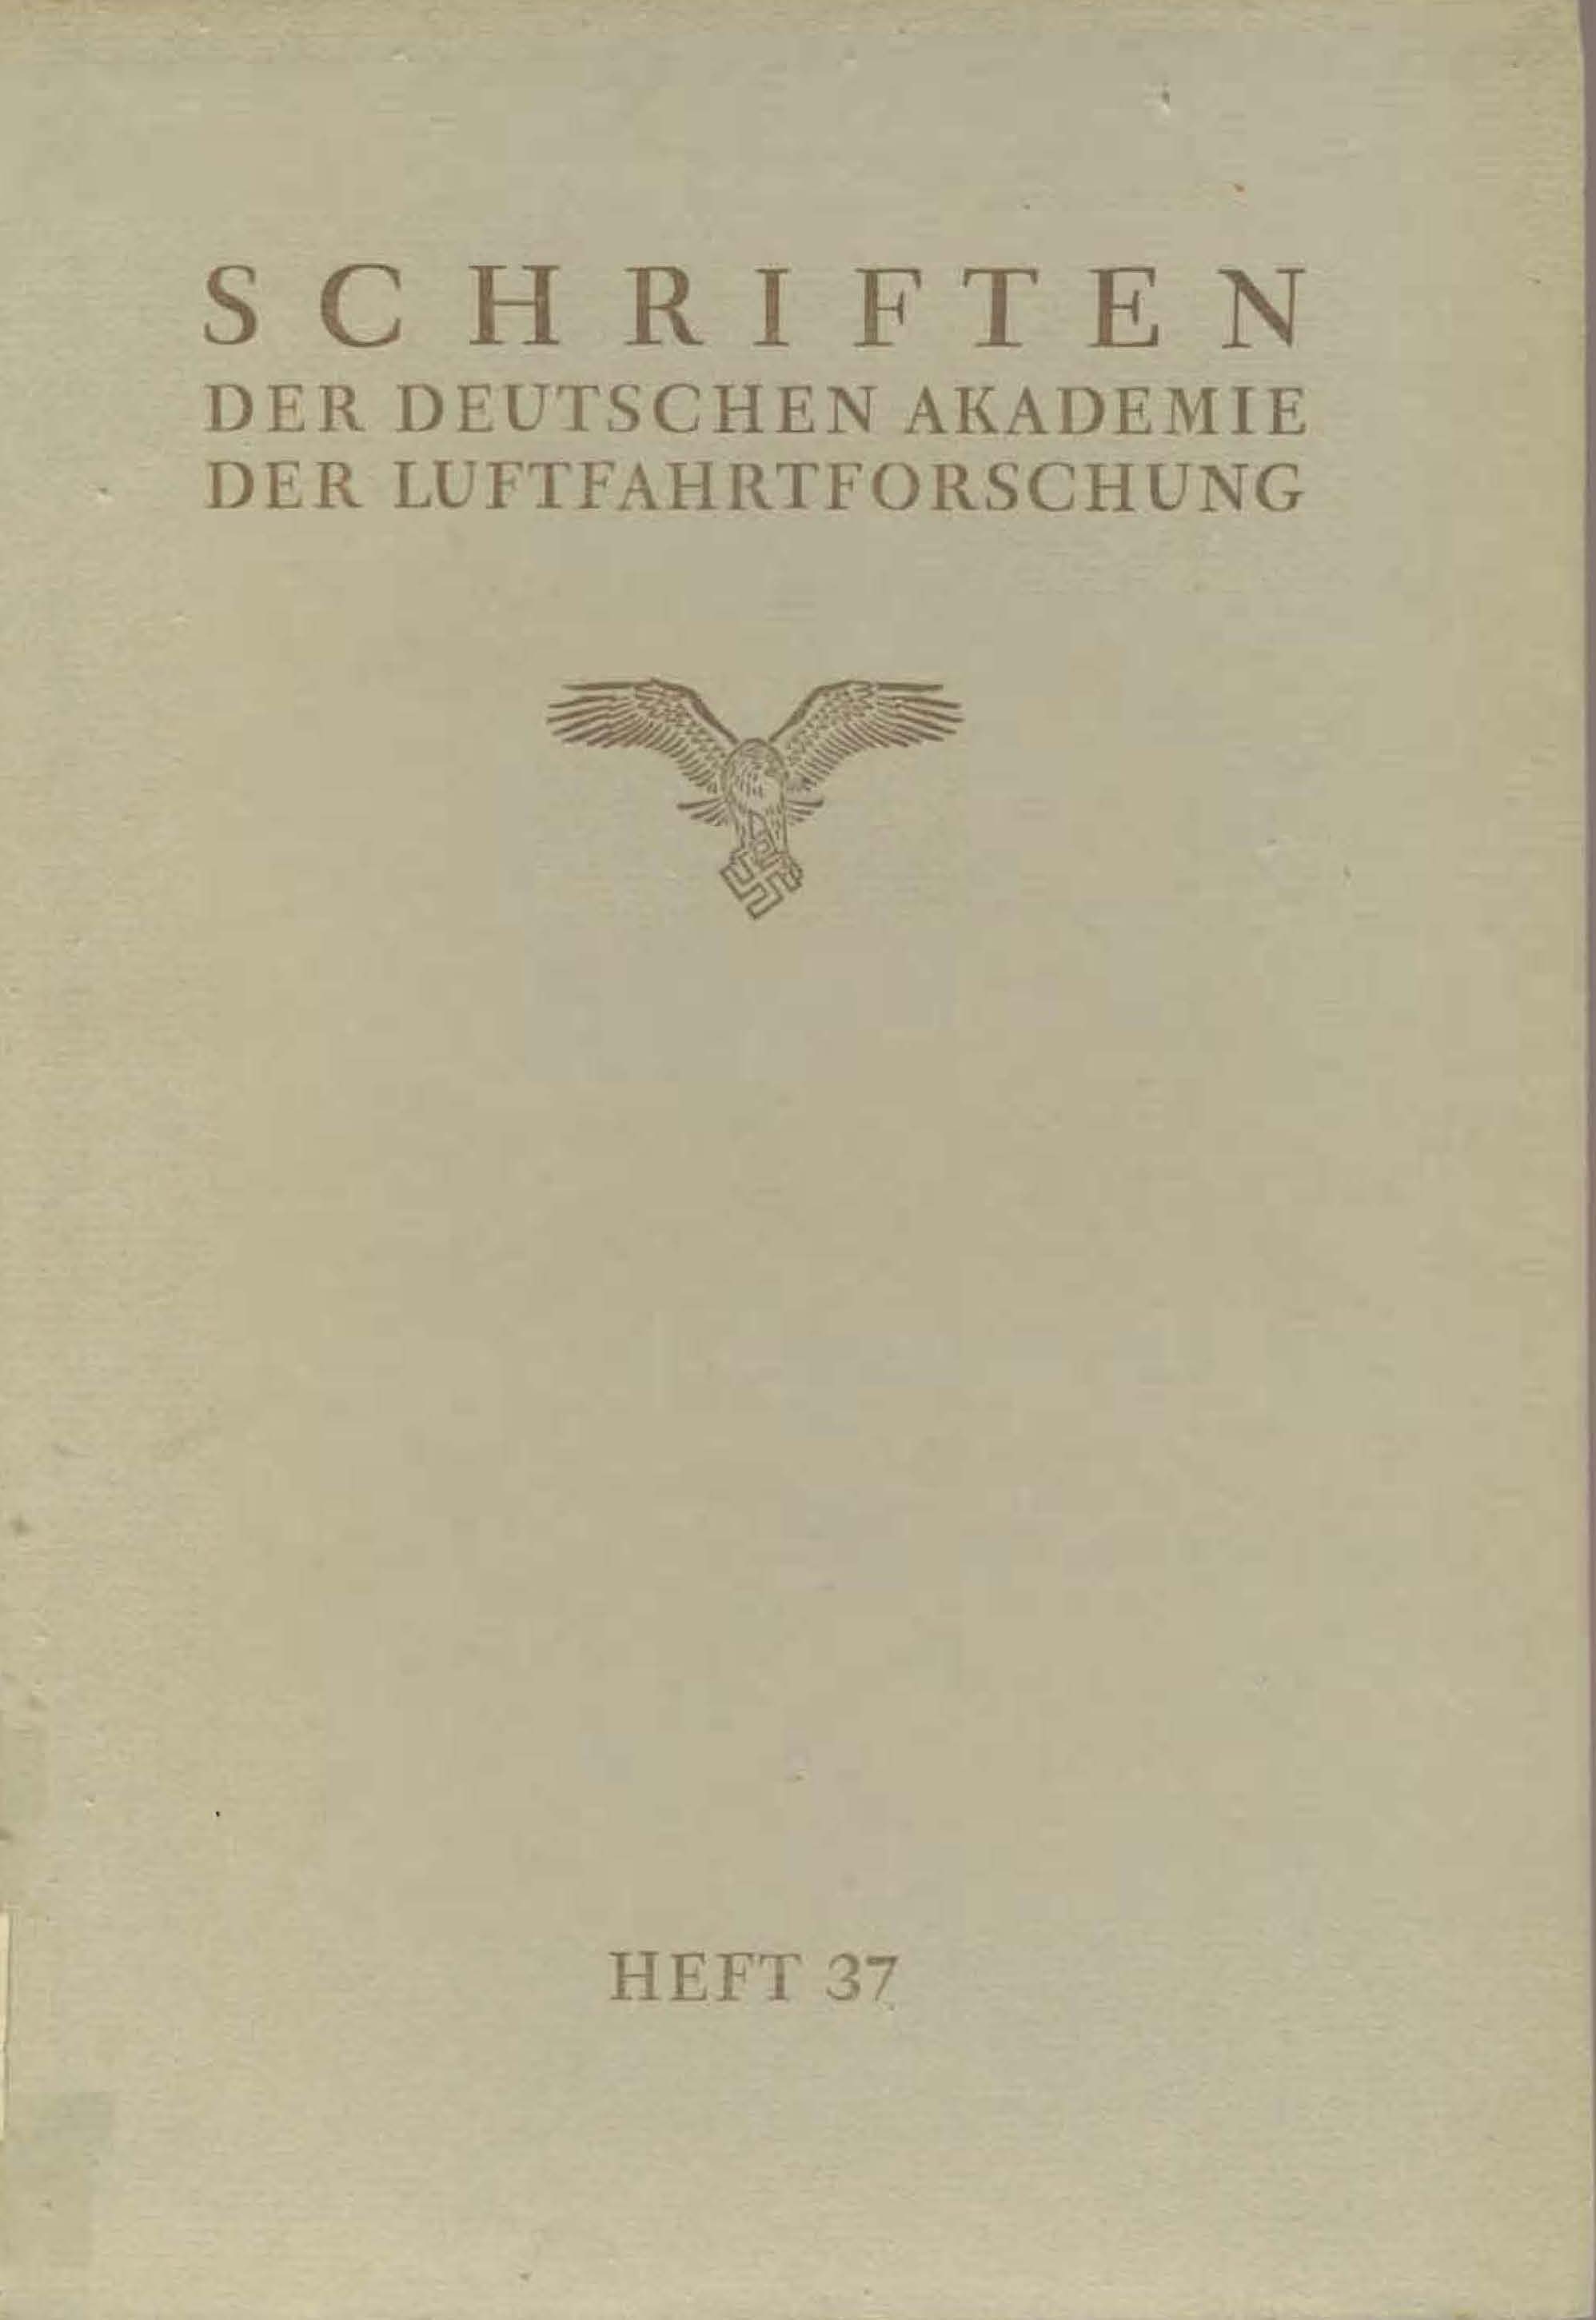 Schriften der Deutschen Akademie der Luftfahrtforschung